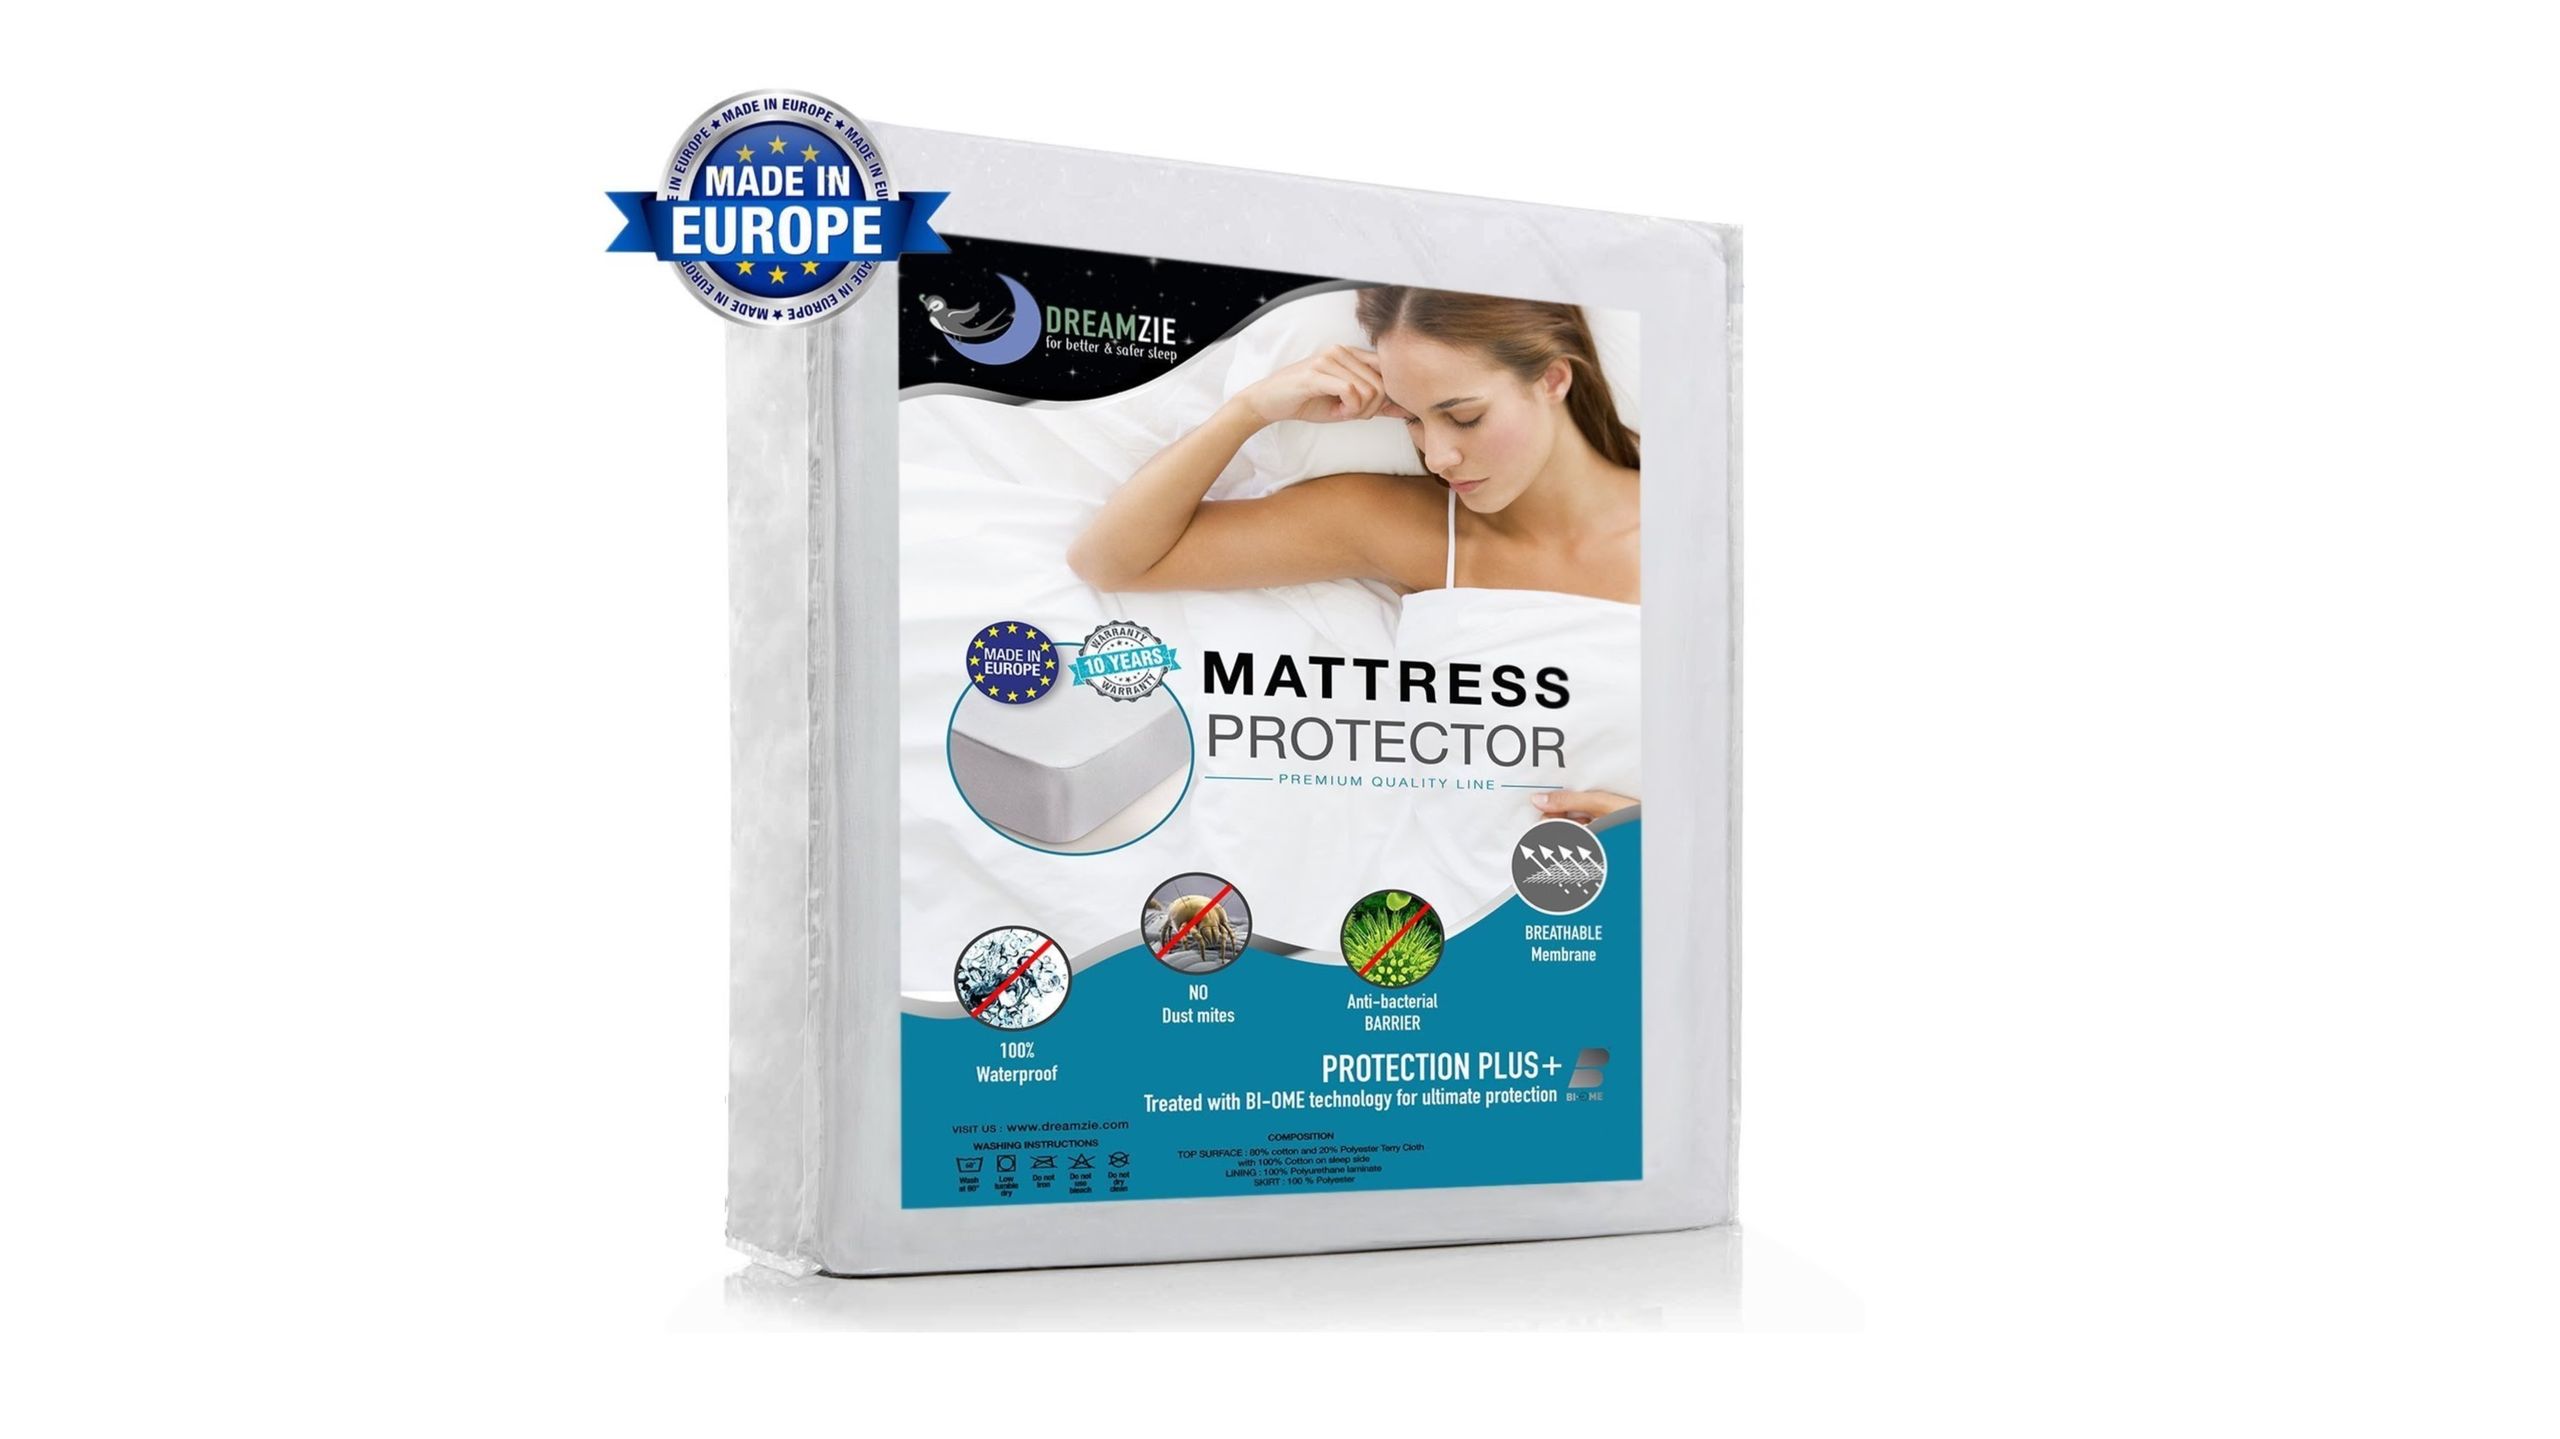 Migliore protezione per materassi: Dreamzie Waterproof Mattress Protector